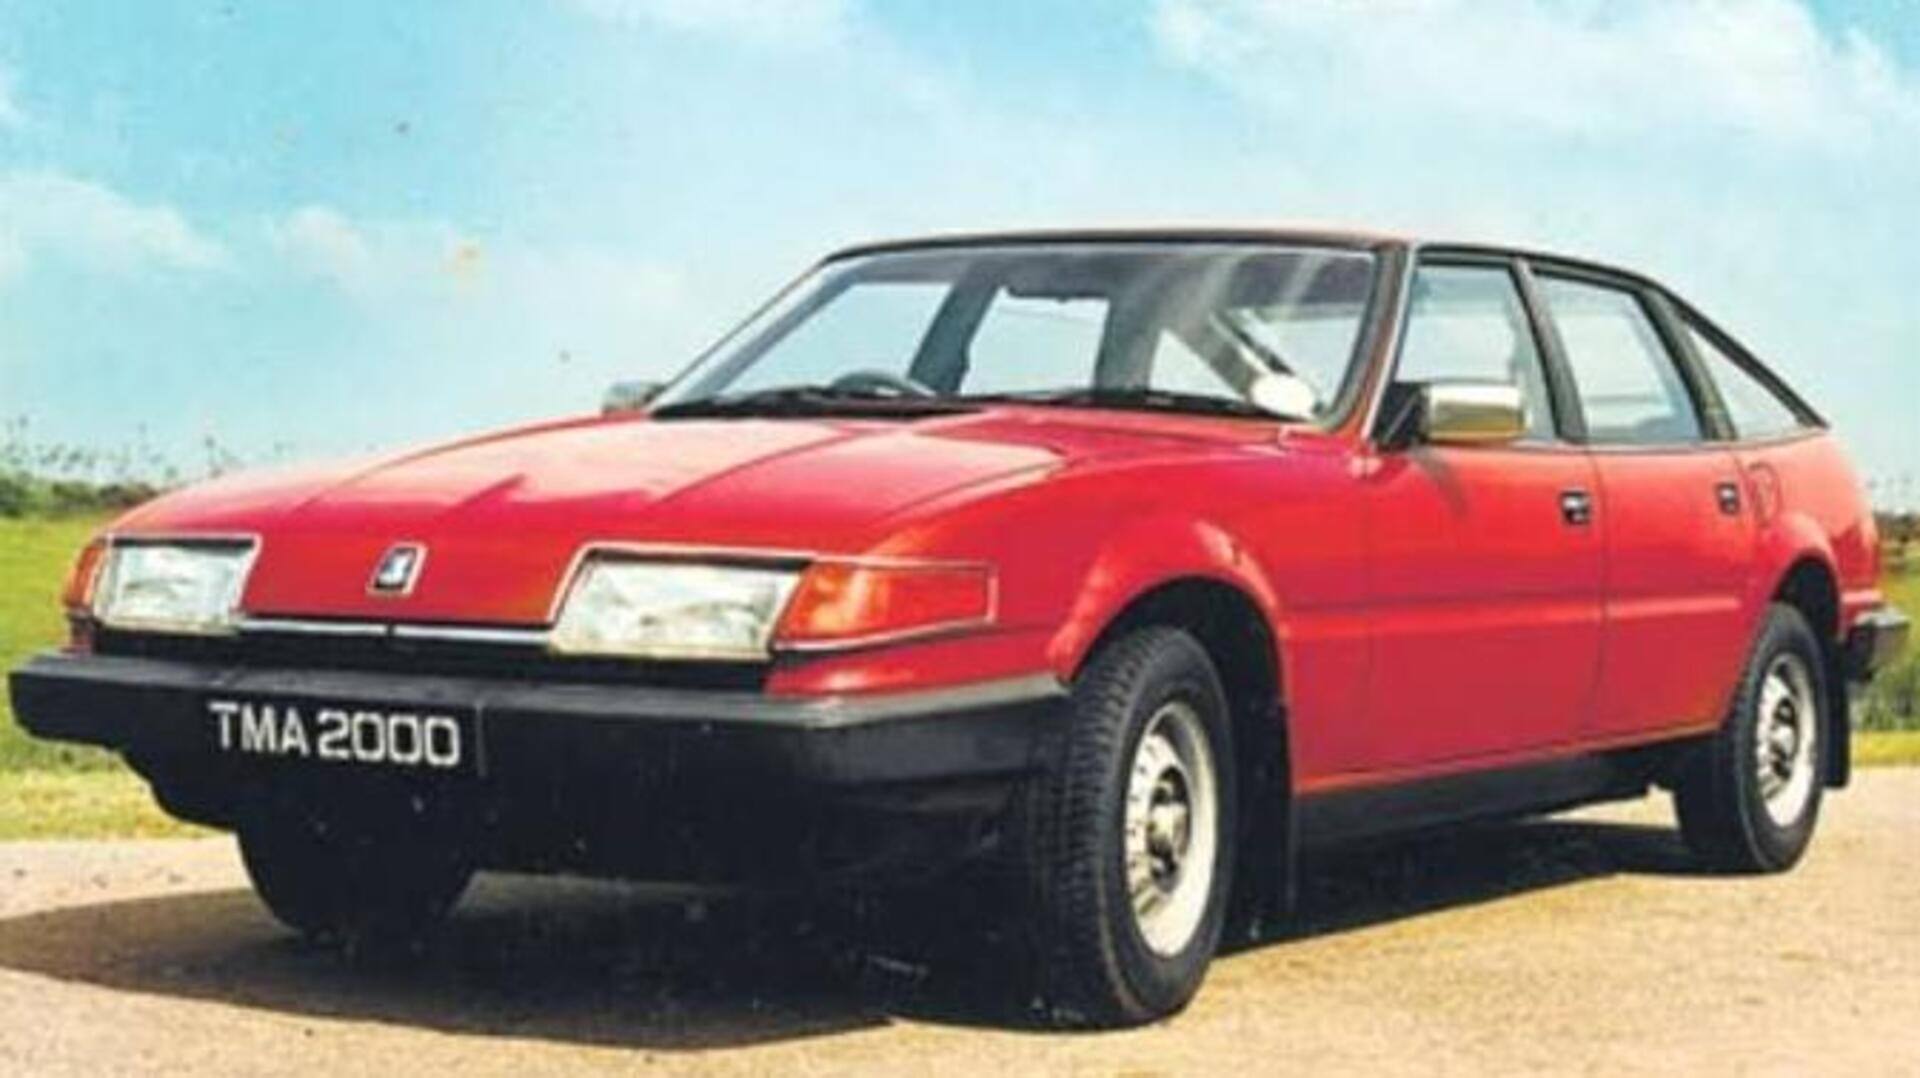 आइकॉनिक कार: स्टैंडर्ड 2000 थी 80 के दशक की सबसे शानदार कारों में शुमार 